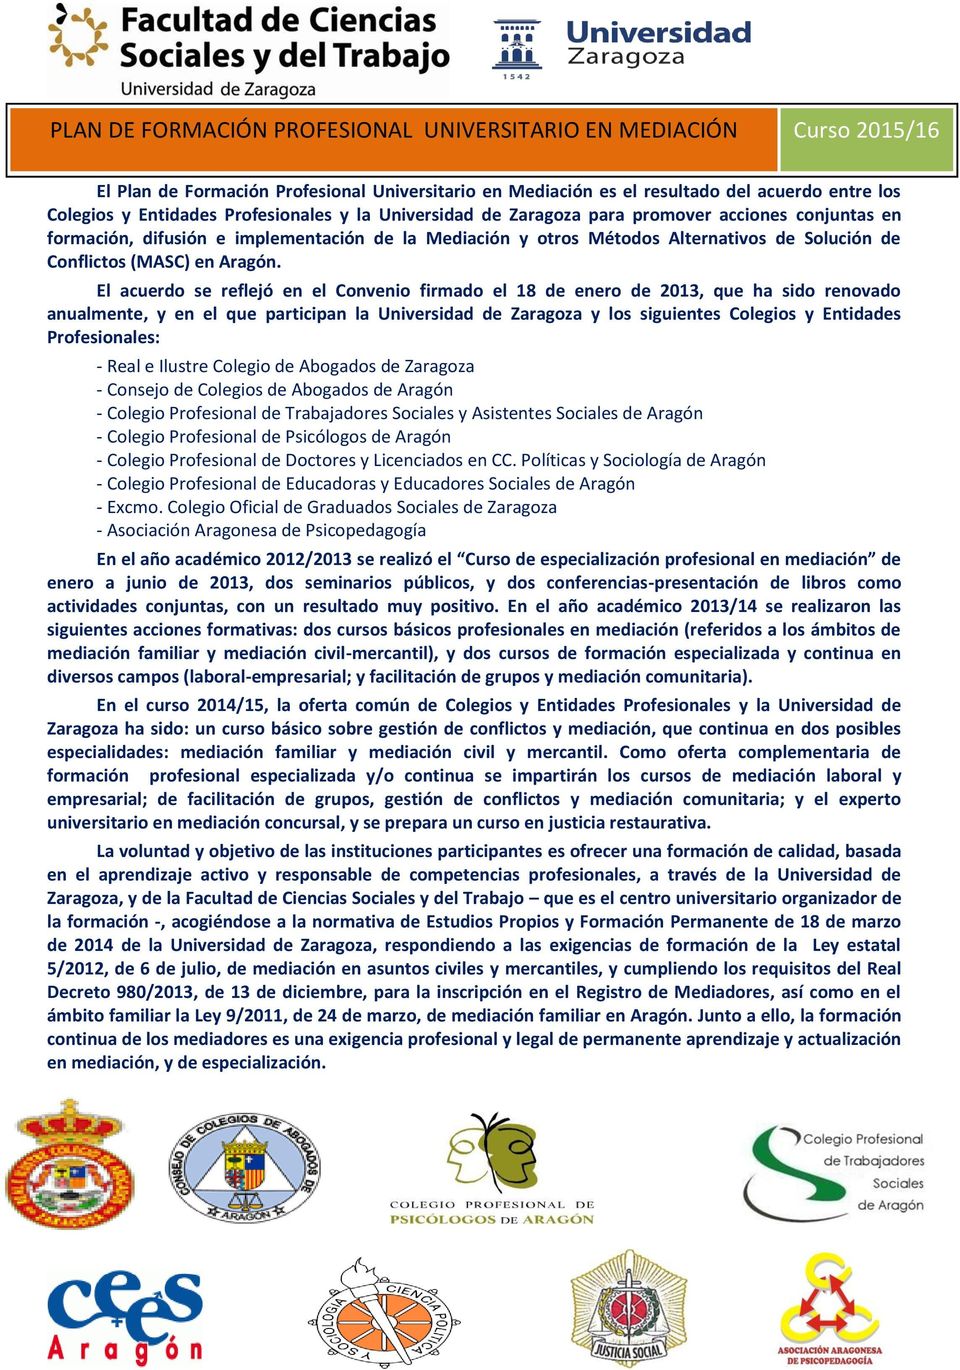 El acuerdo se reflejó en el Convenio firmado el 18 de enero de 2013, que ha sido renovado anualmente, y en el que participan la Universidad de Zaragoza y los siguientes Colegios y Entidades